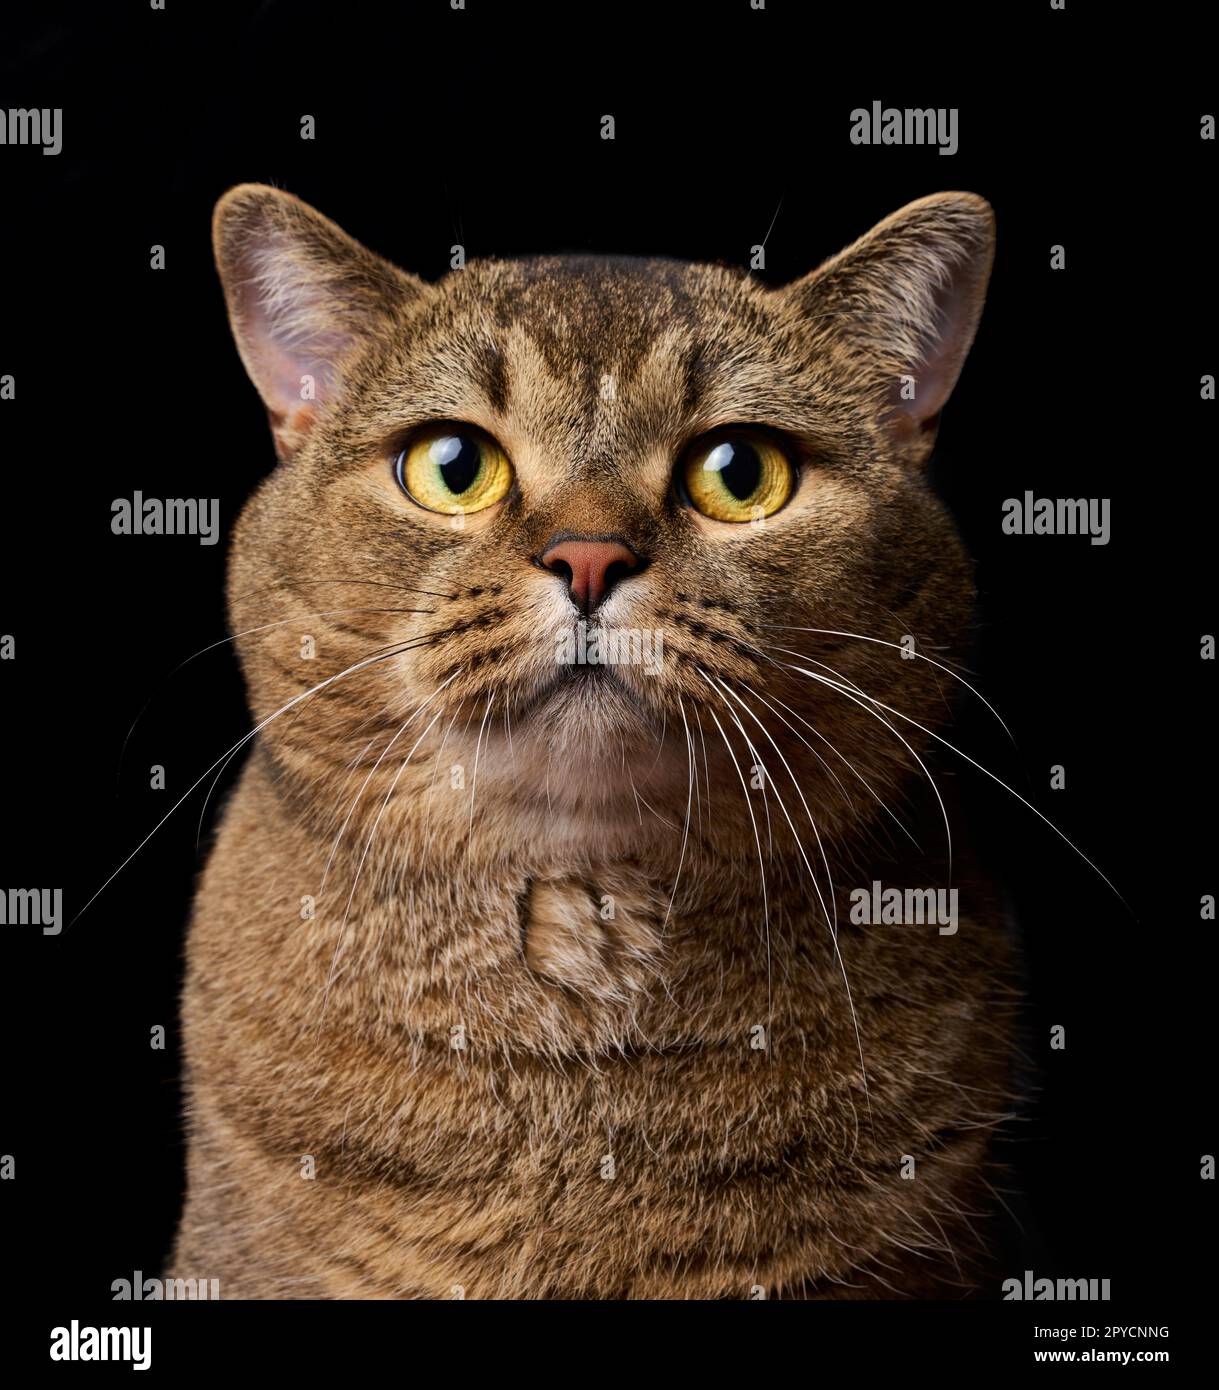 Ein Porträt einer erwachsenen grauen schottischen Katze mit geradem Ohr vor schwarzem Hintergrund, das Tier schaut in die Kamera. Stockfoto